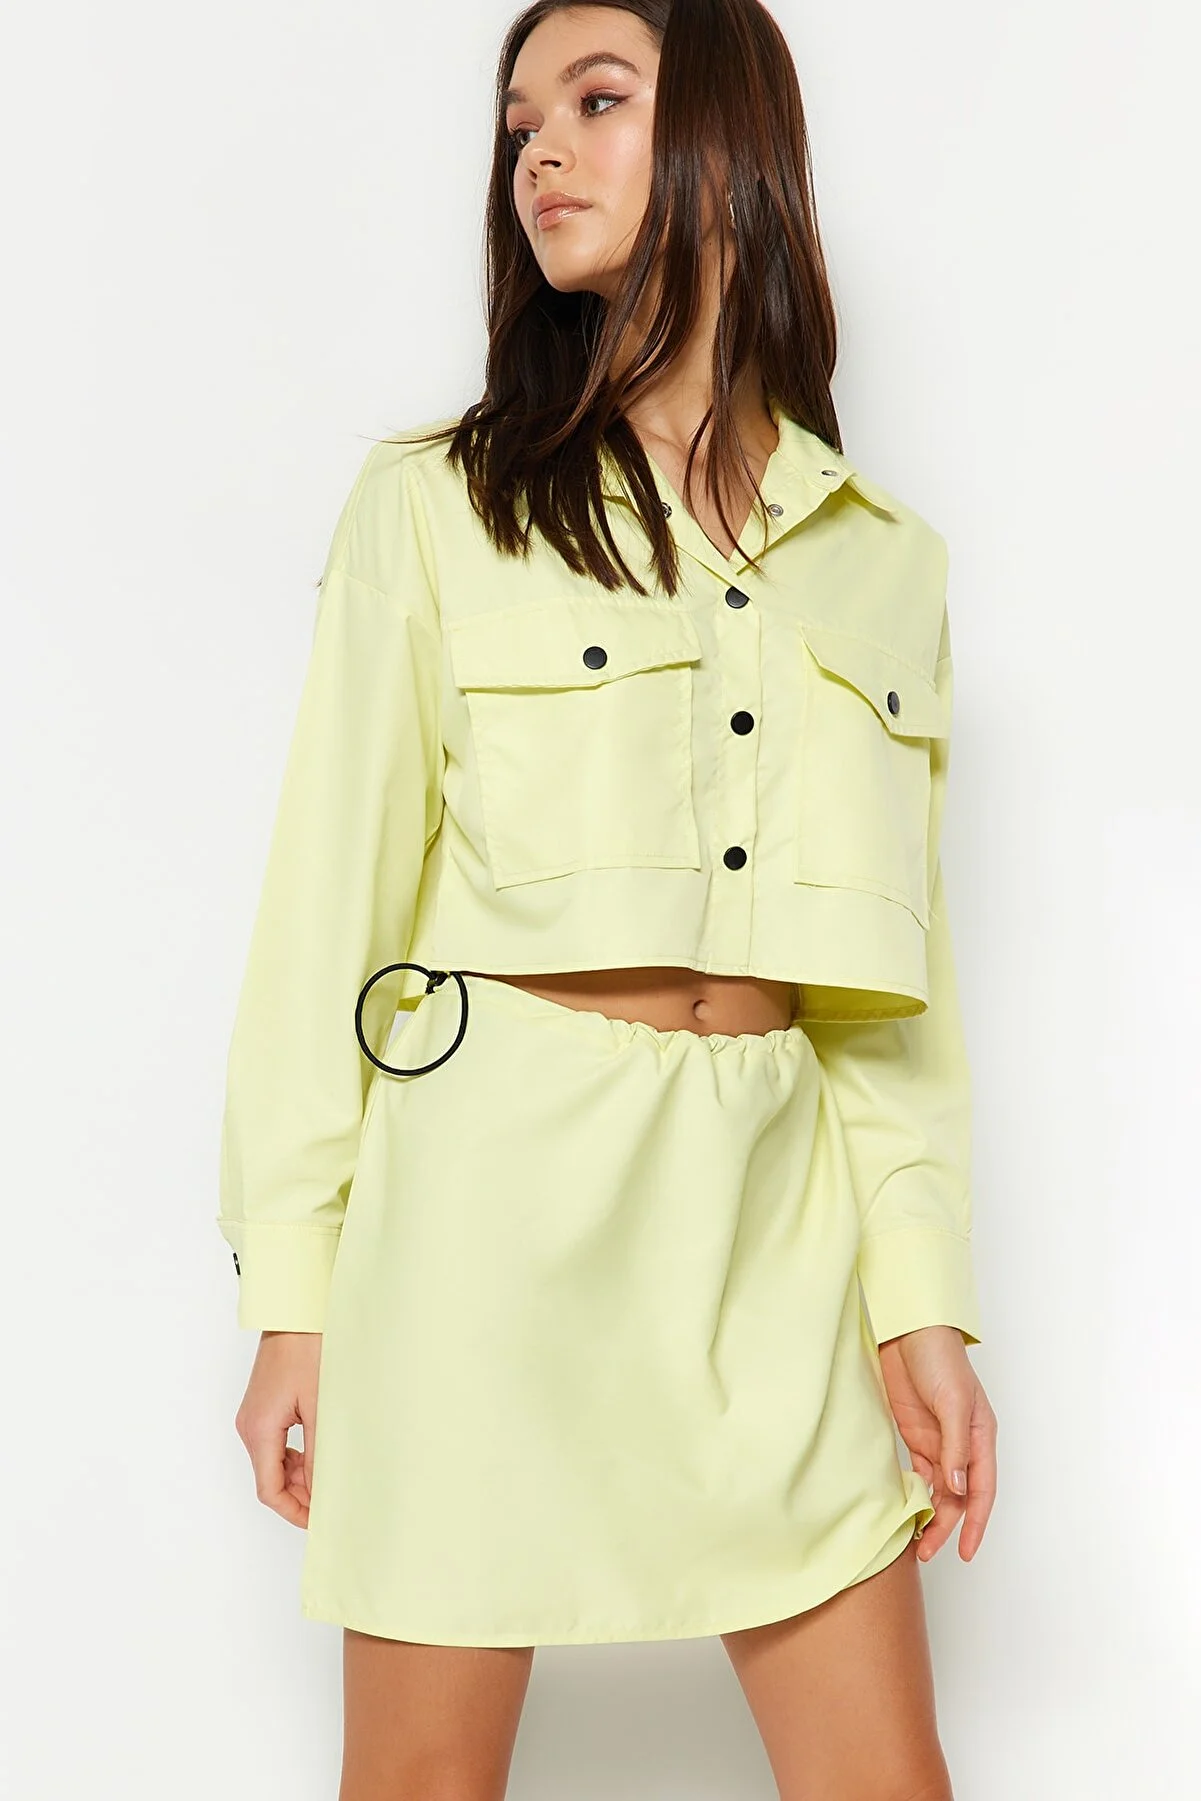 Trendyol Collection Yellow Skirt for Women - Picks for Less UAE